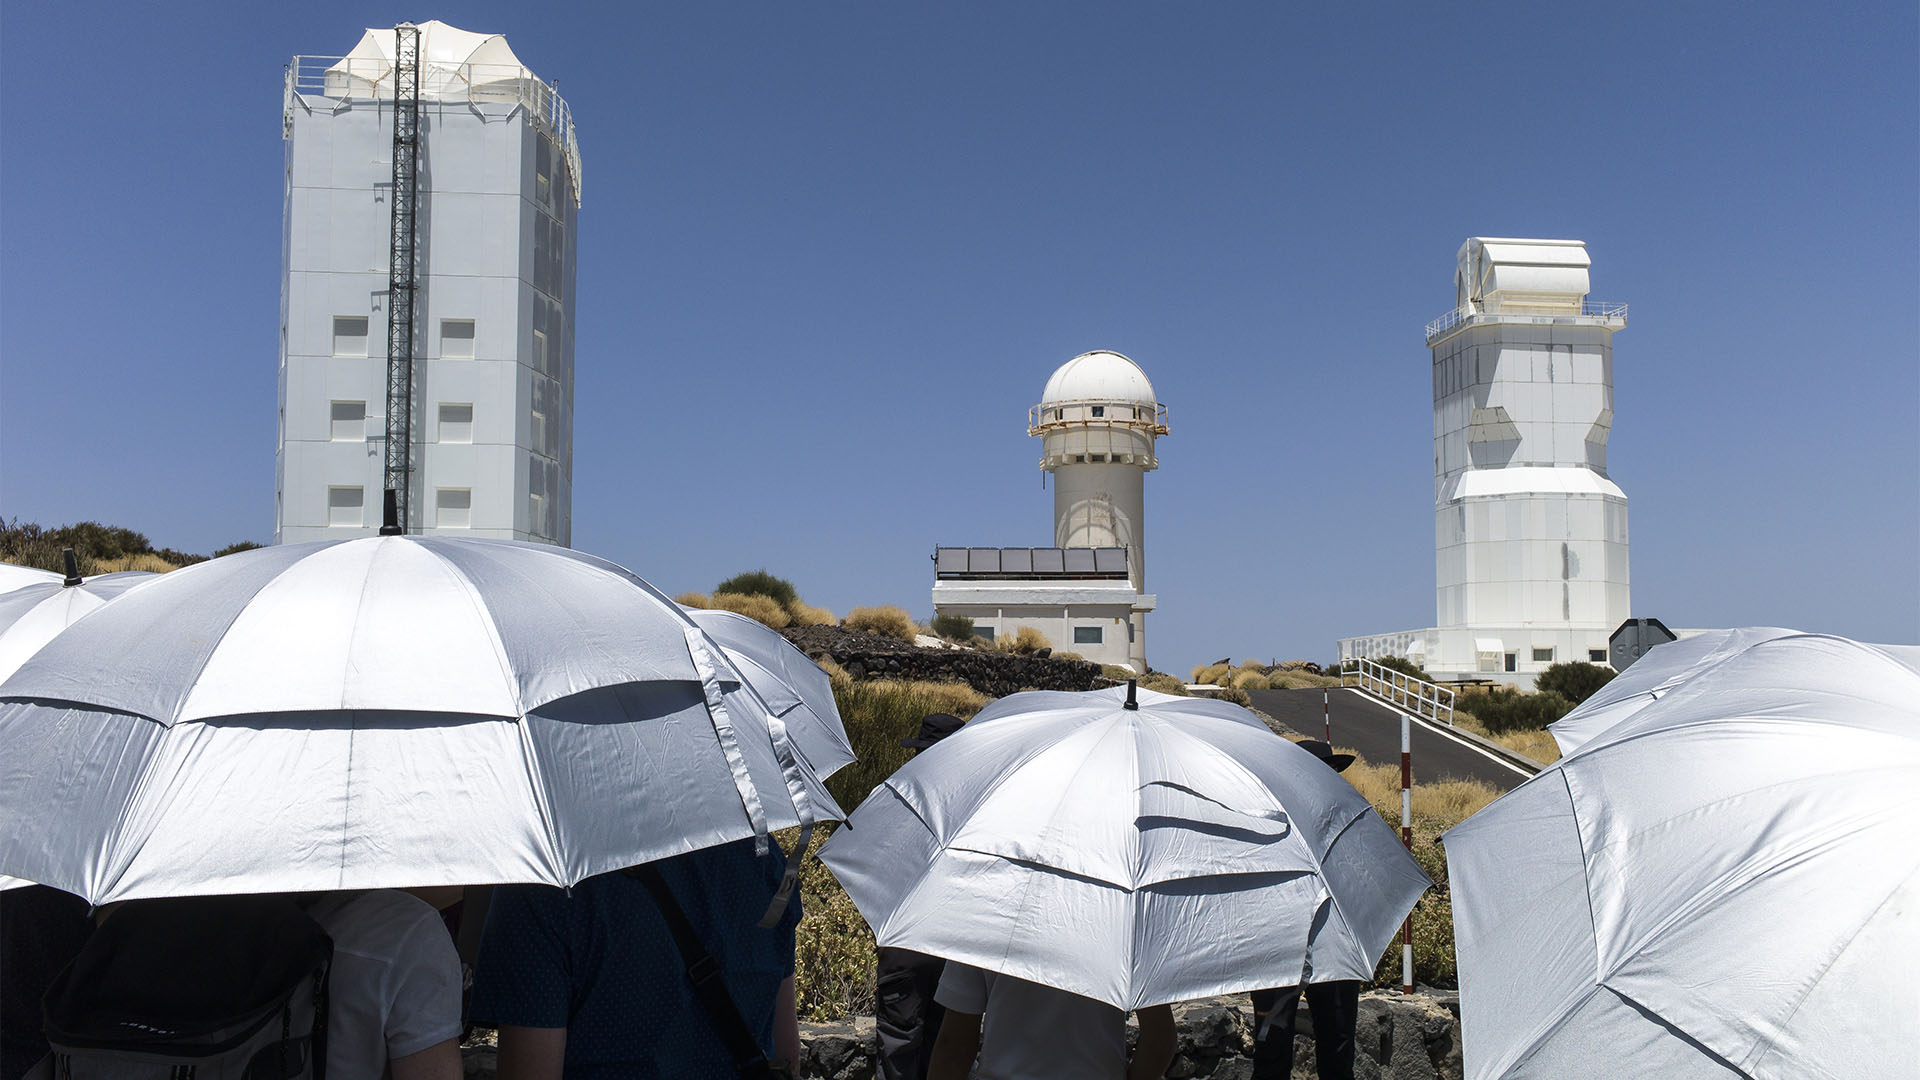 Besuchergruppe vor den Sonnenteleskopen. Links das mächtige deutche Sonnenteleskope GREGOR, bestes seiner Art weltweit.